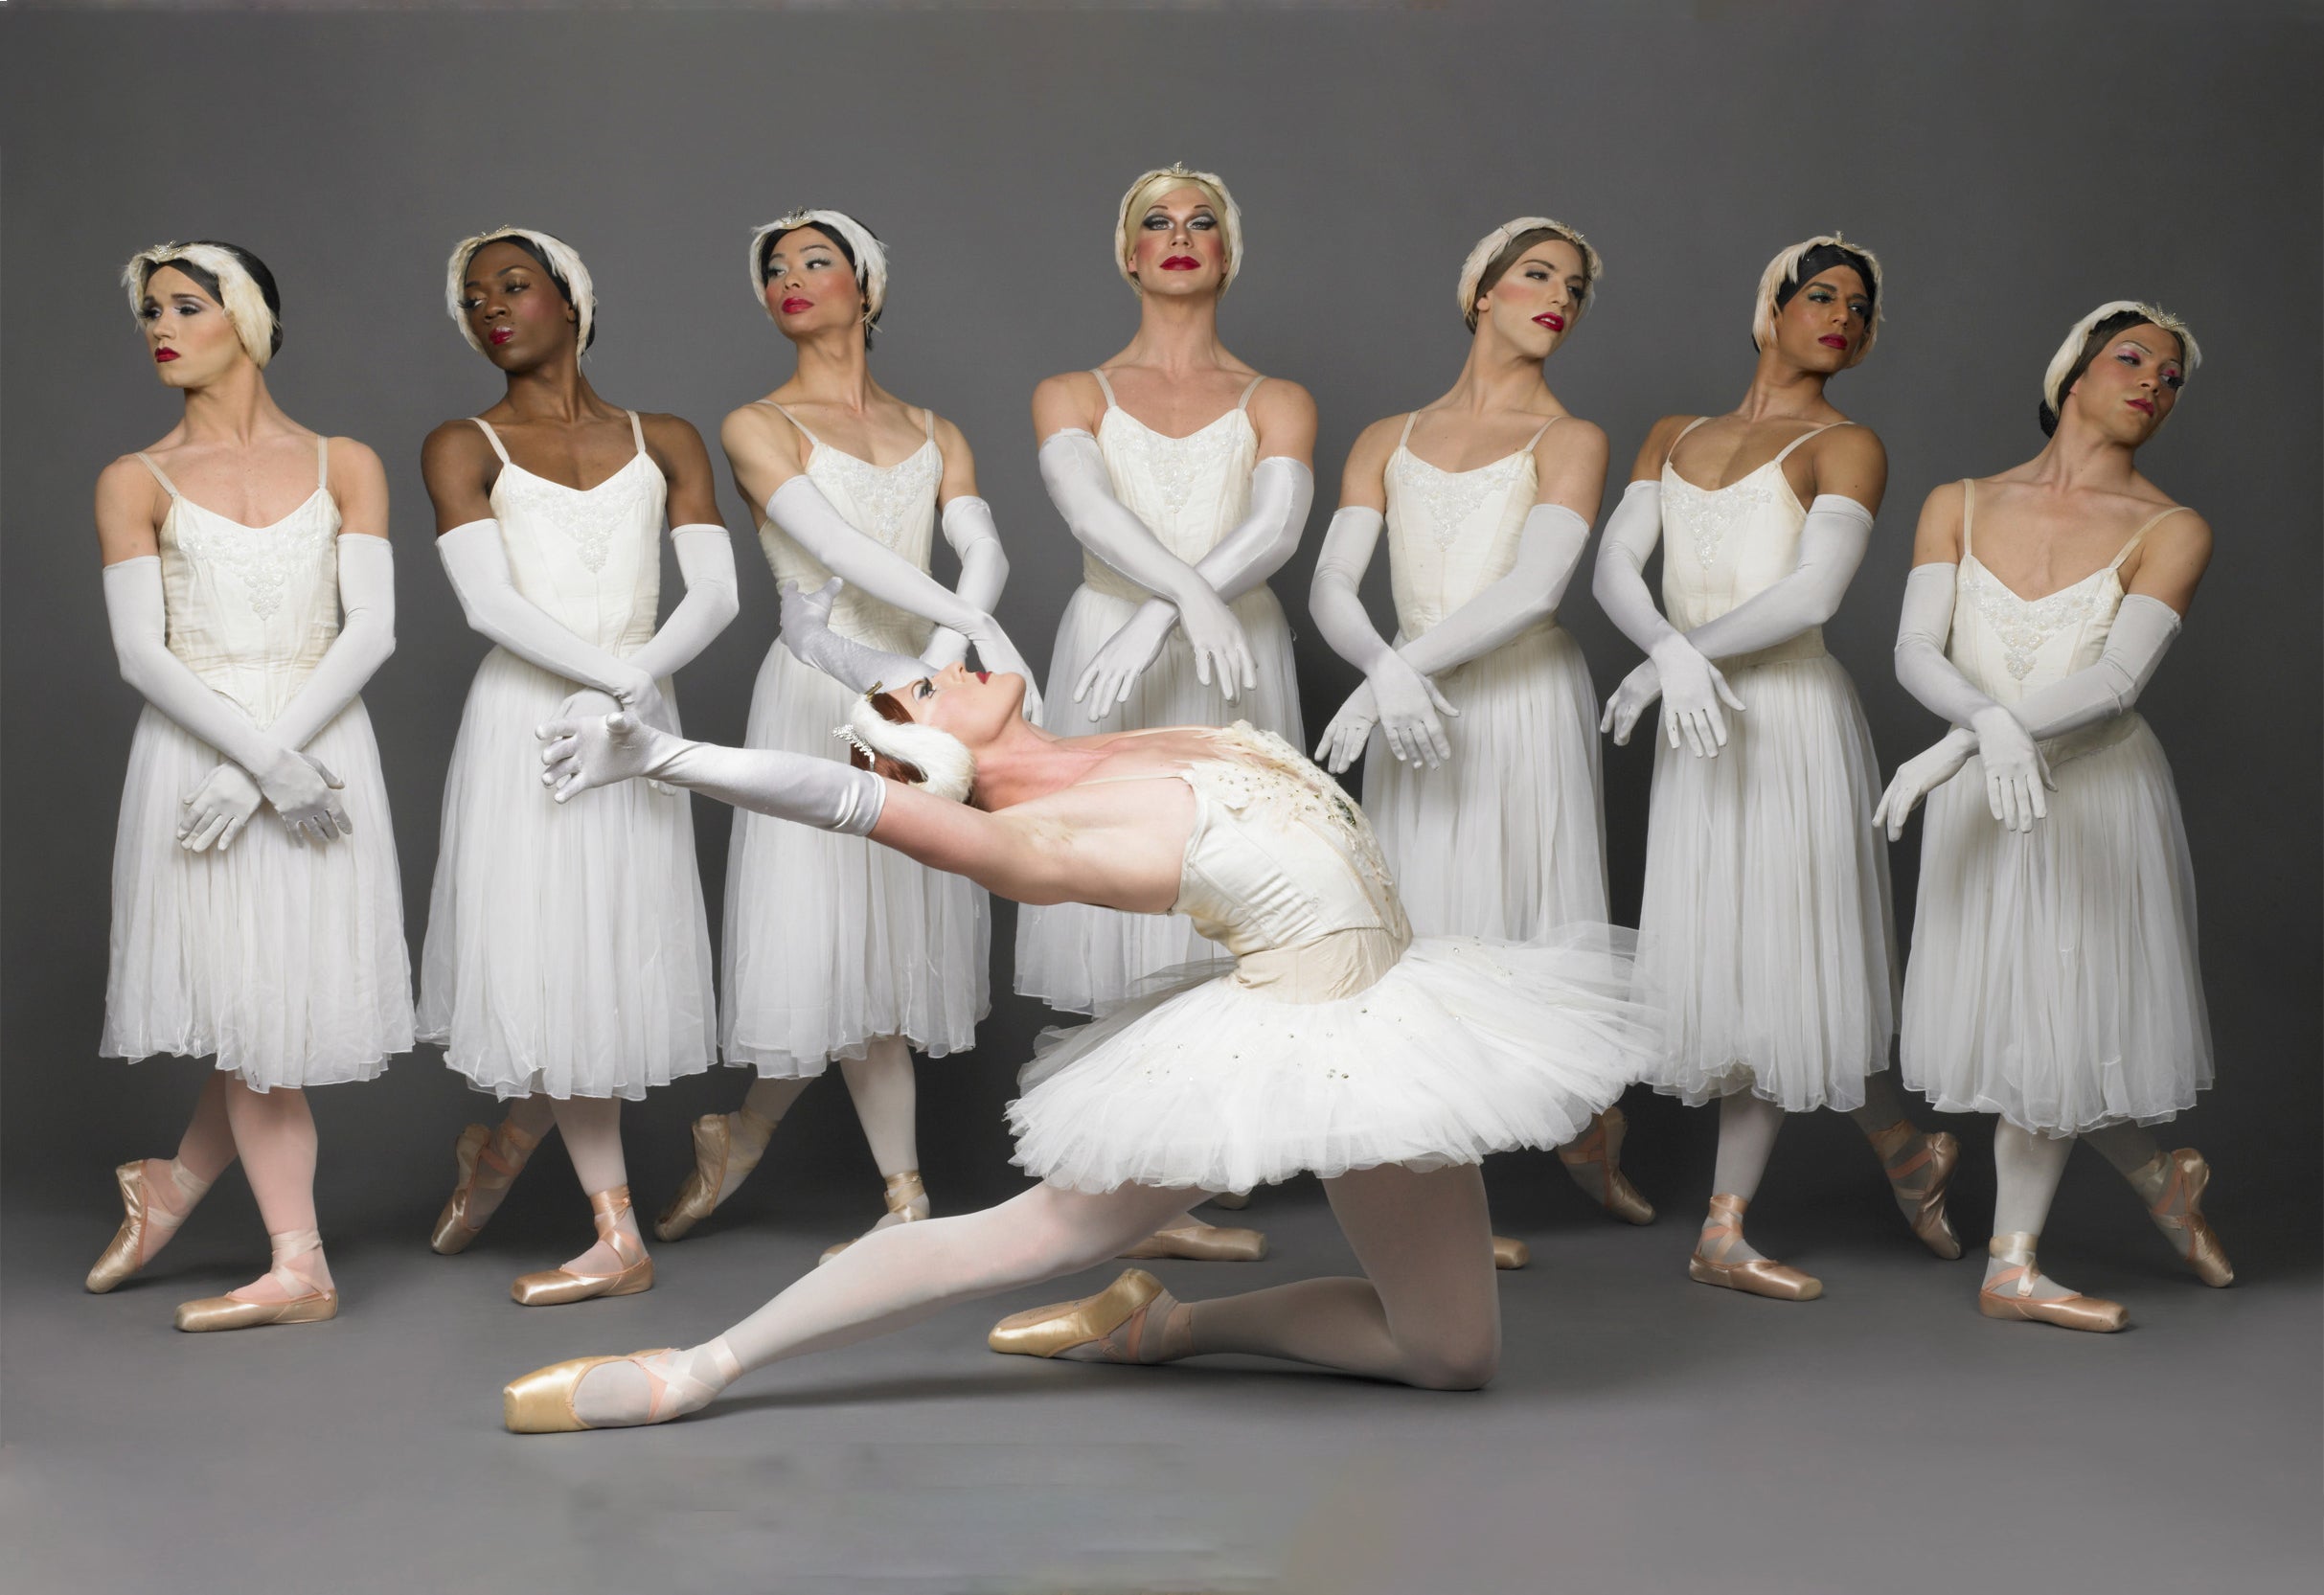 Les Ballets Trockadero De Monte Carlo - Des Moines, IA 50309